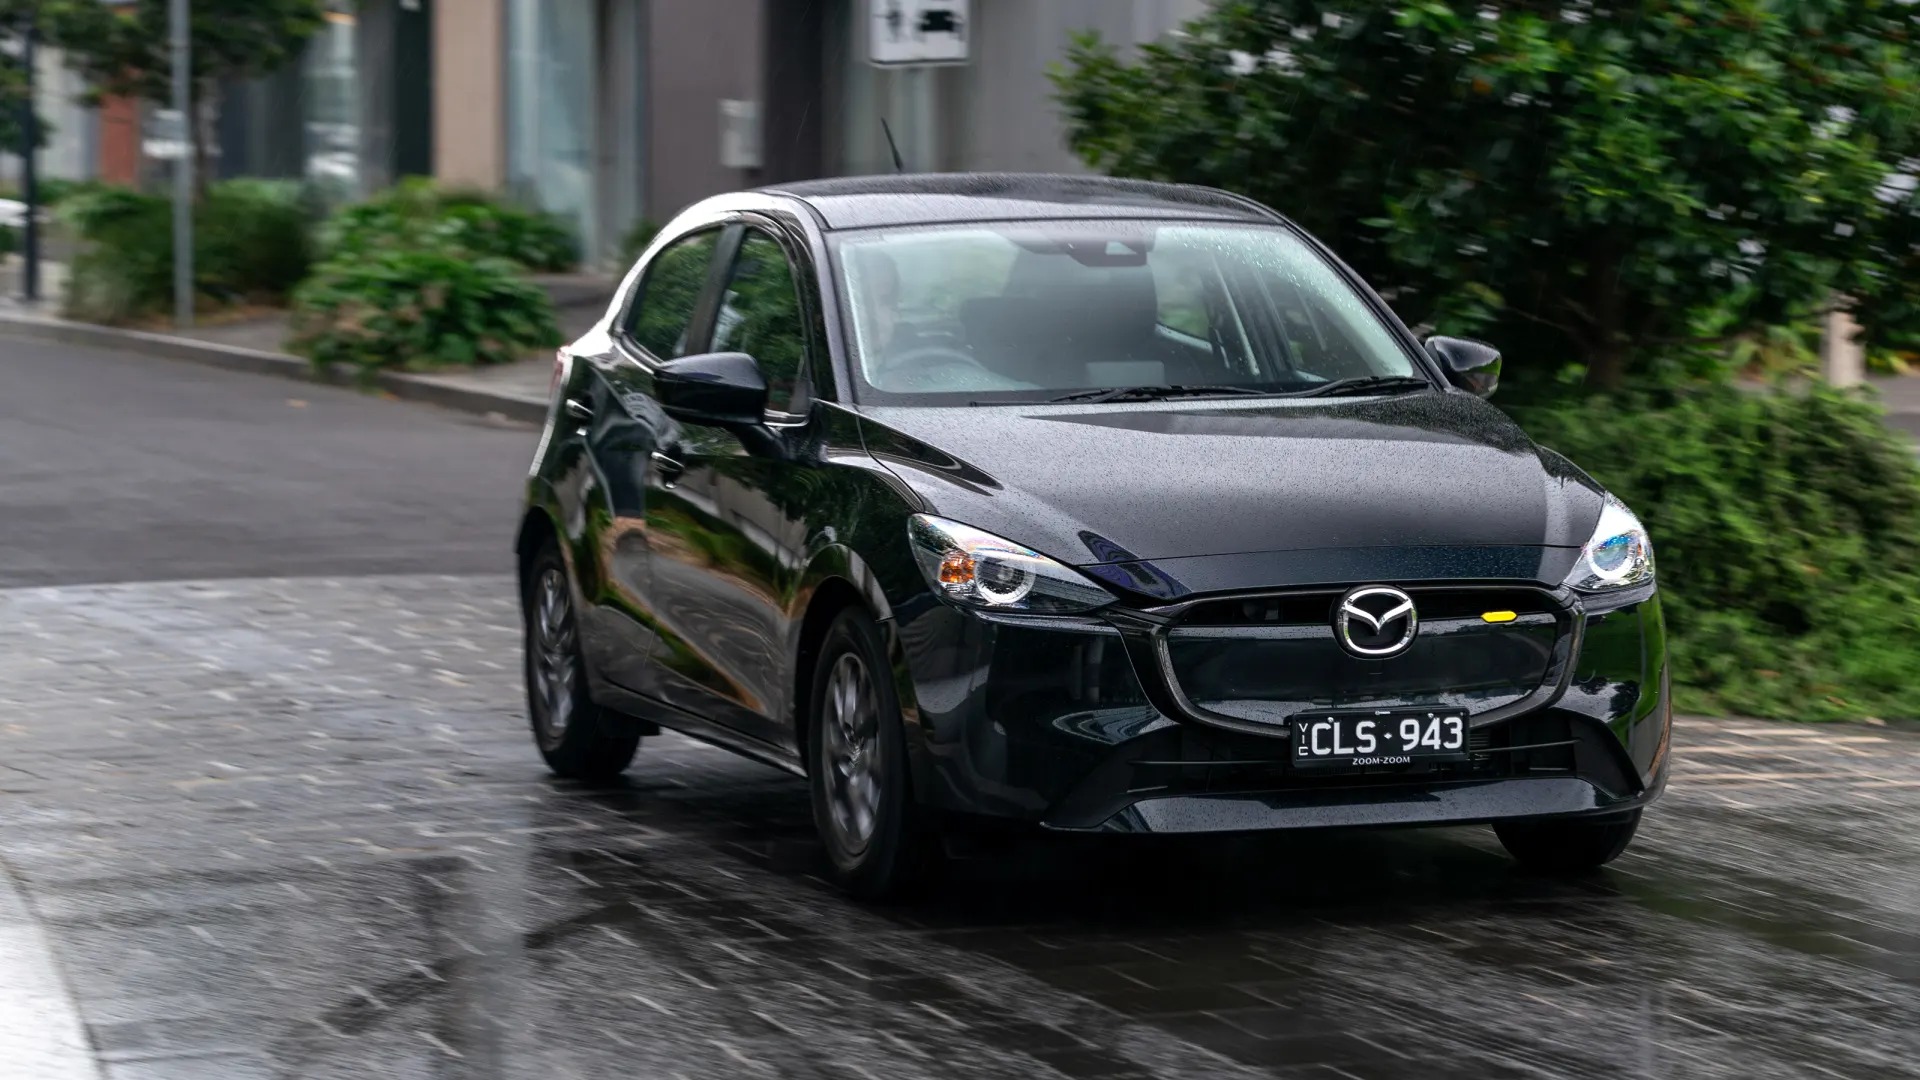 Mazda2 thế hệ mới với nhiều trang bị hiện đại